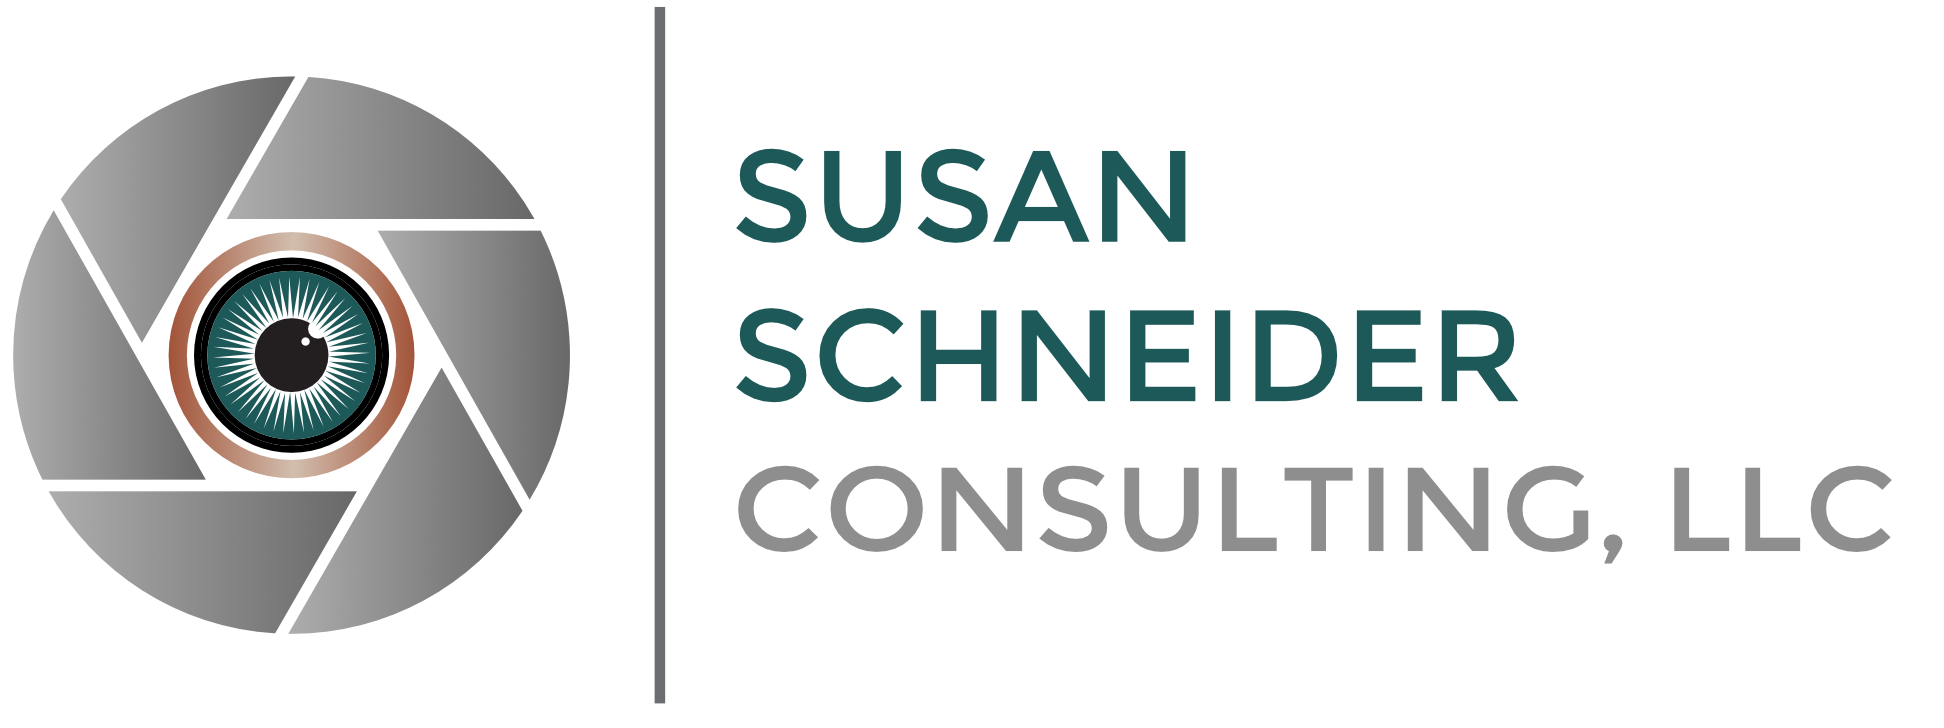 Susan Schneider Consulting, LLC